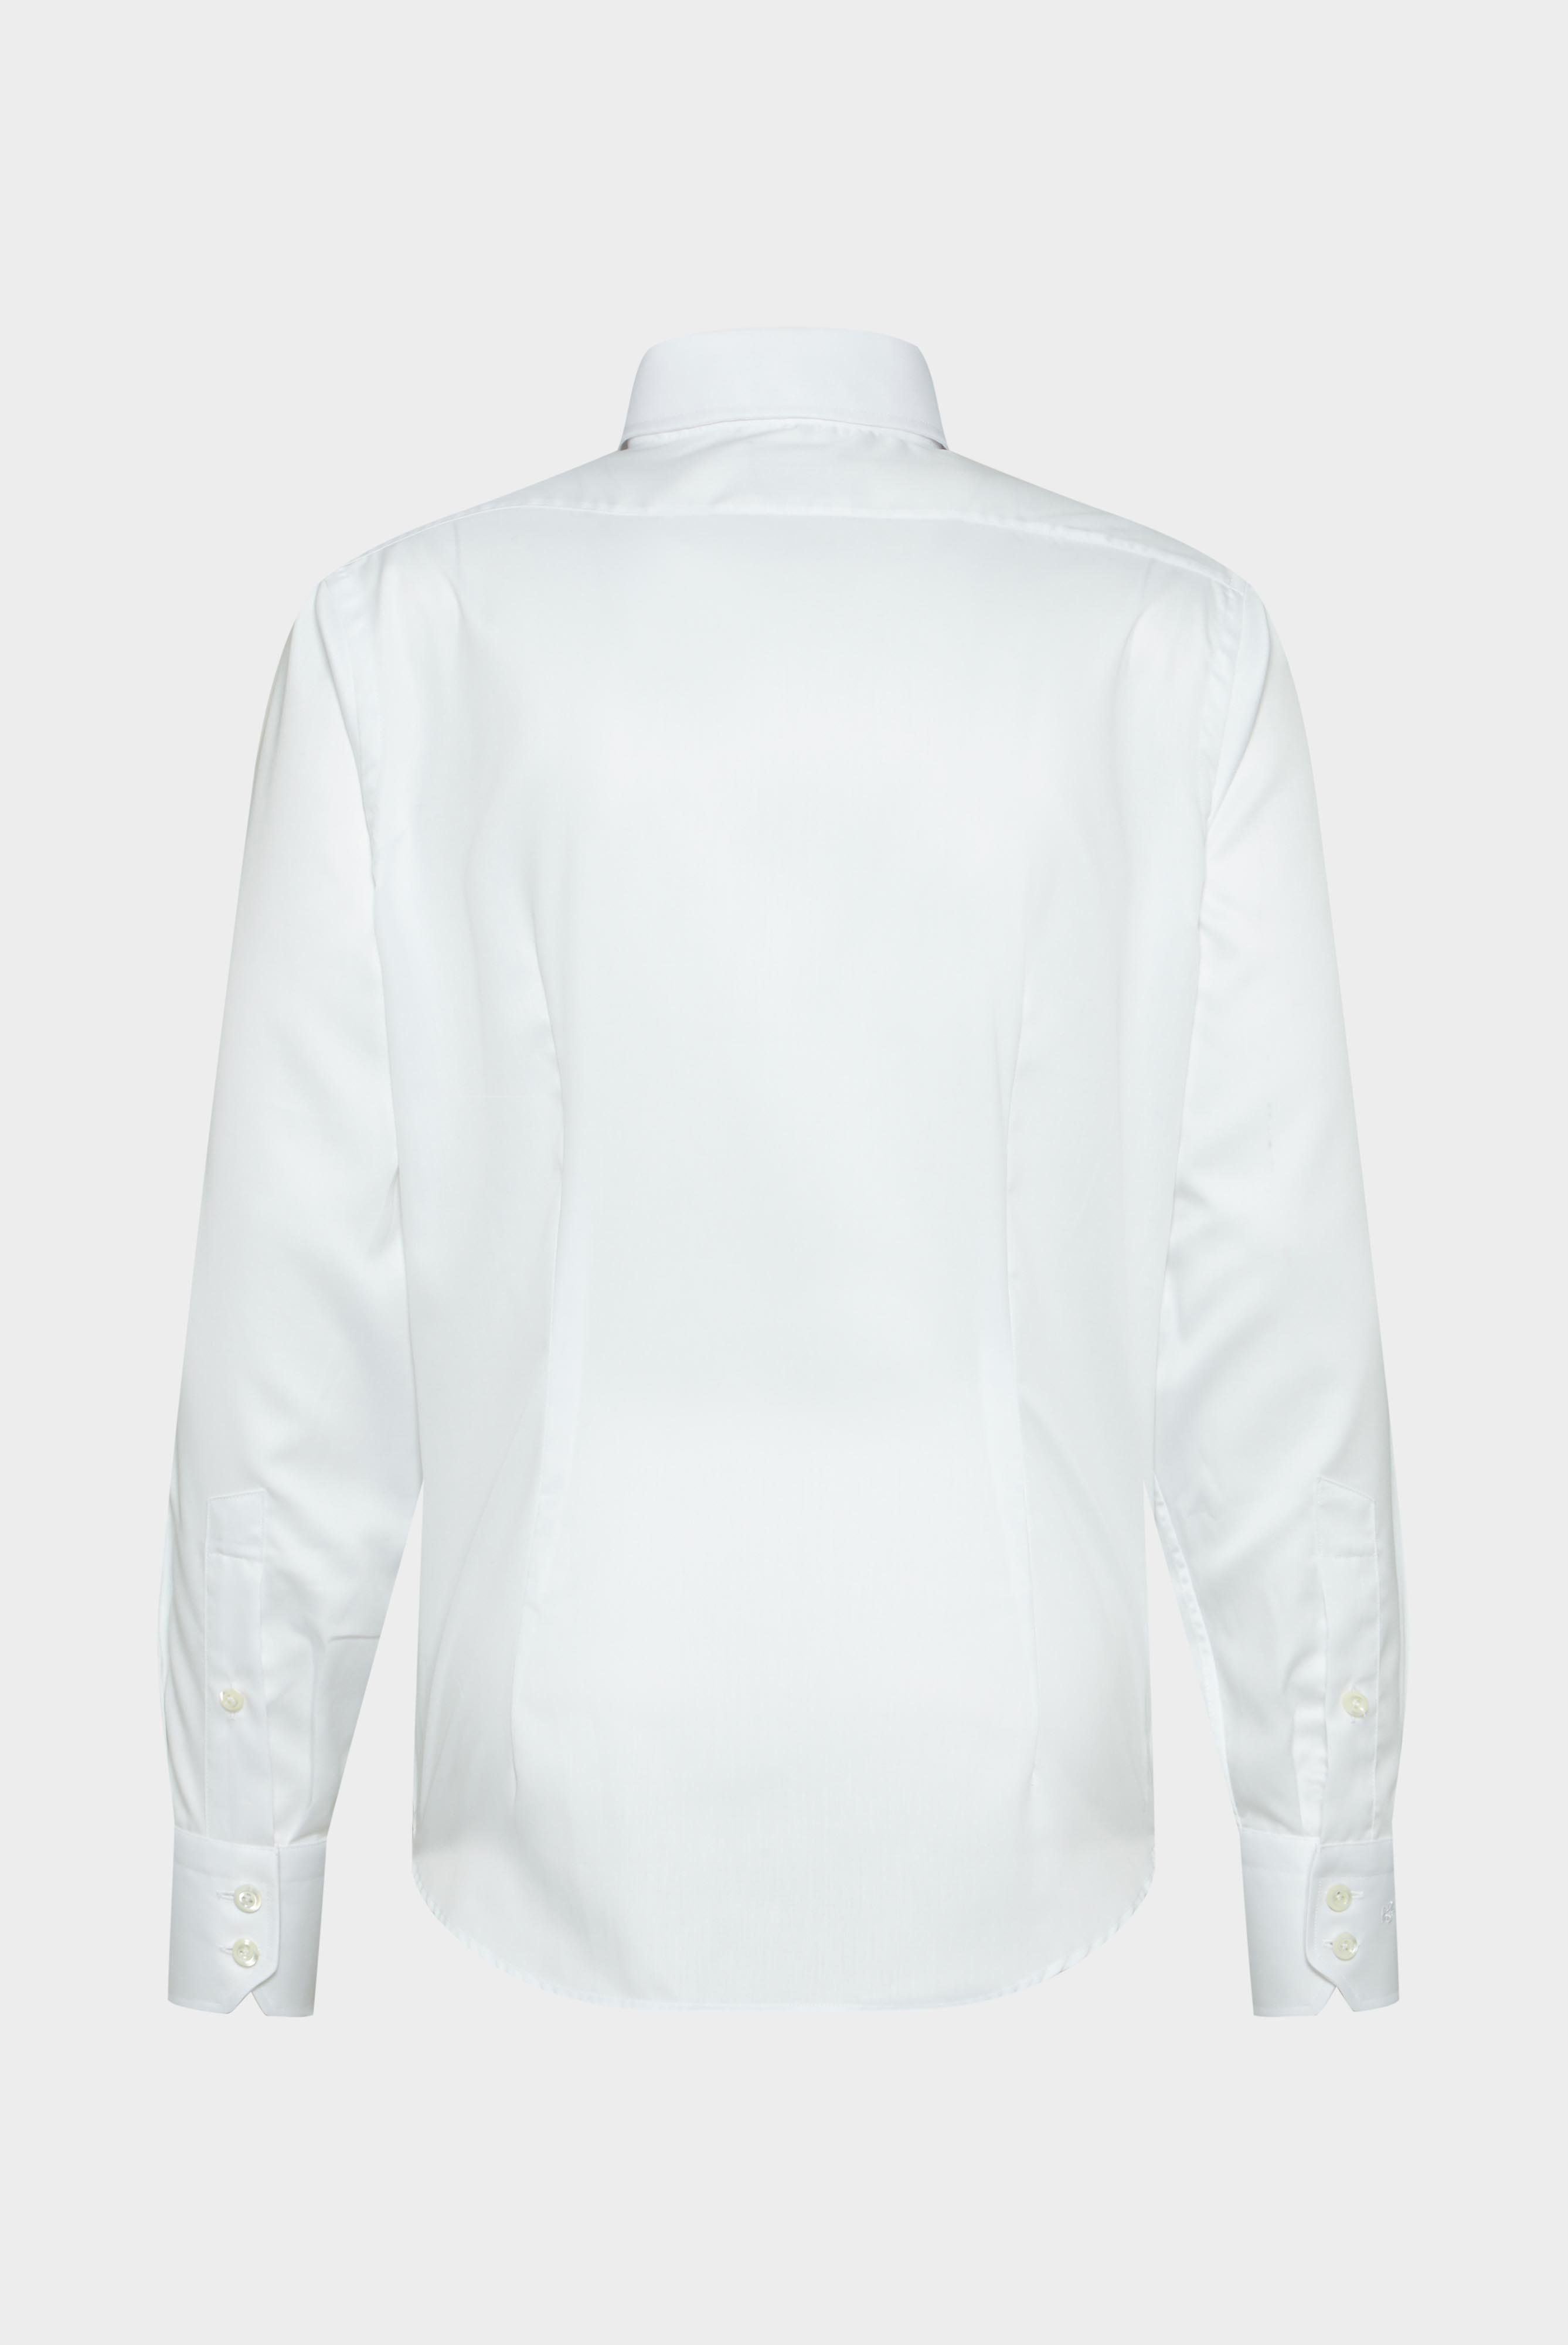 Bügelleichte Hemden+Bügelfreies Twill Hemd Tailor Fit+20.2020.BQ.132241.000.37